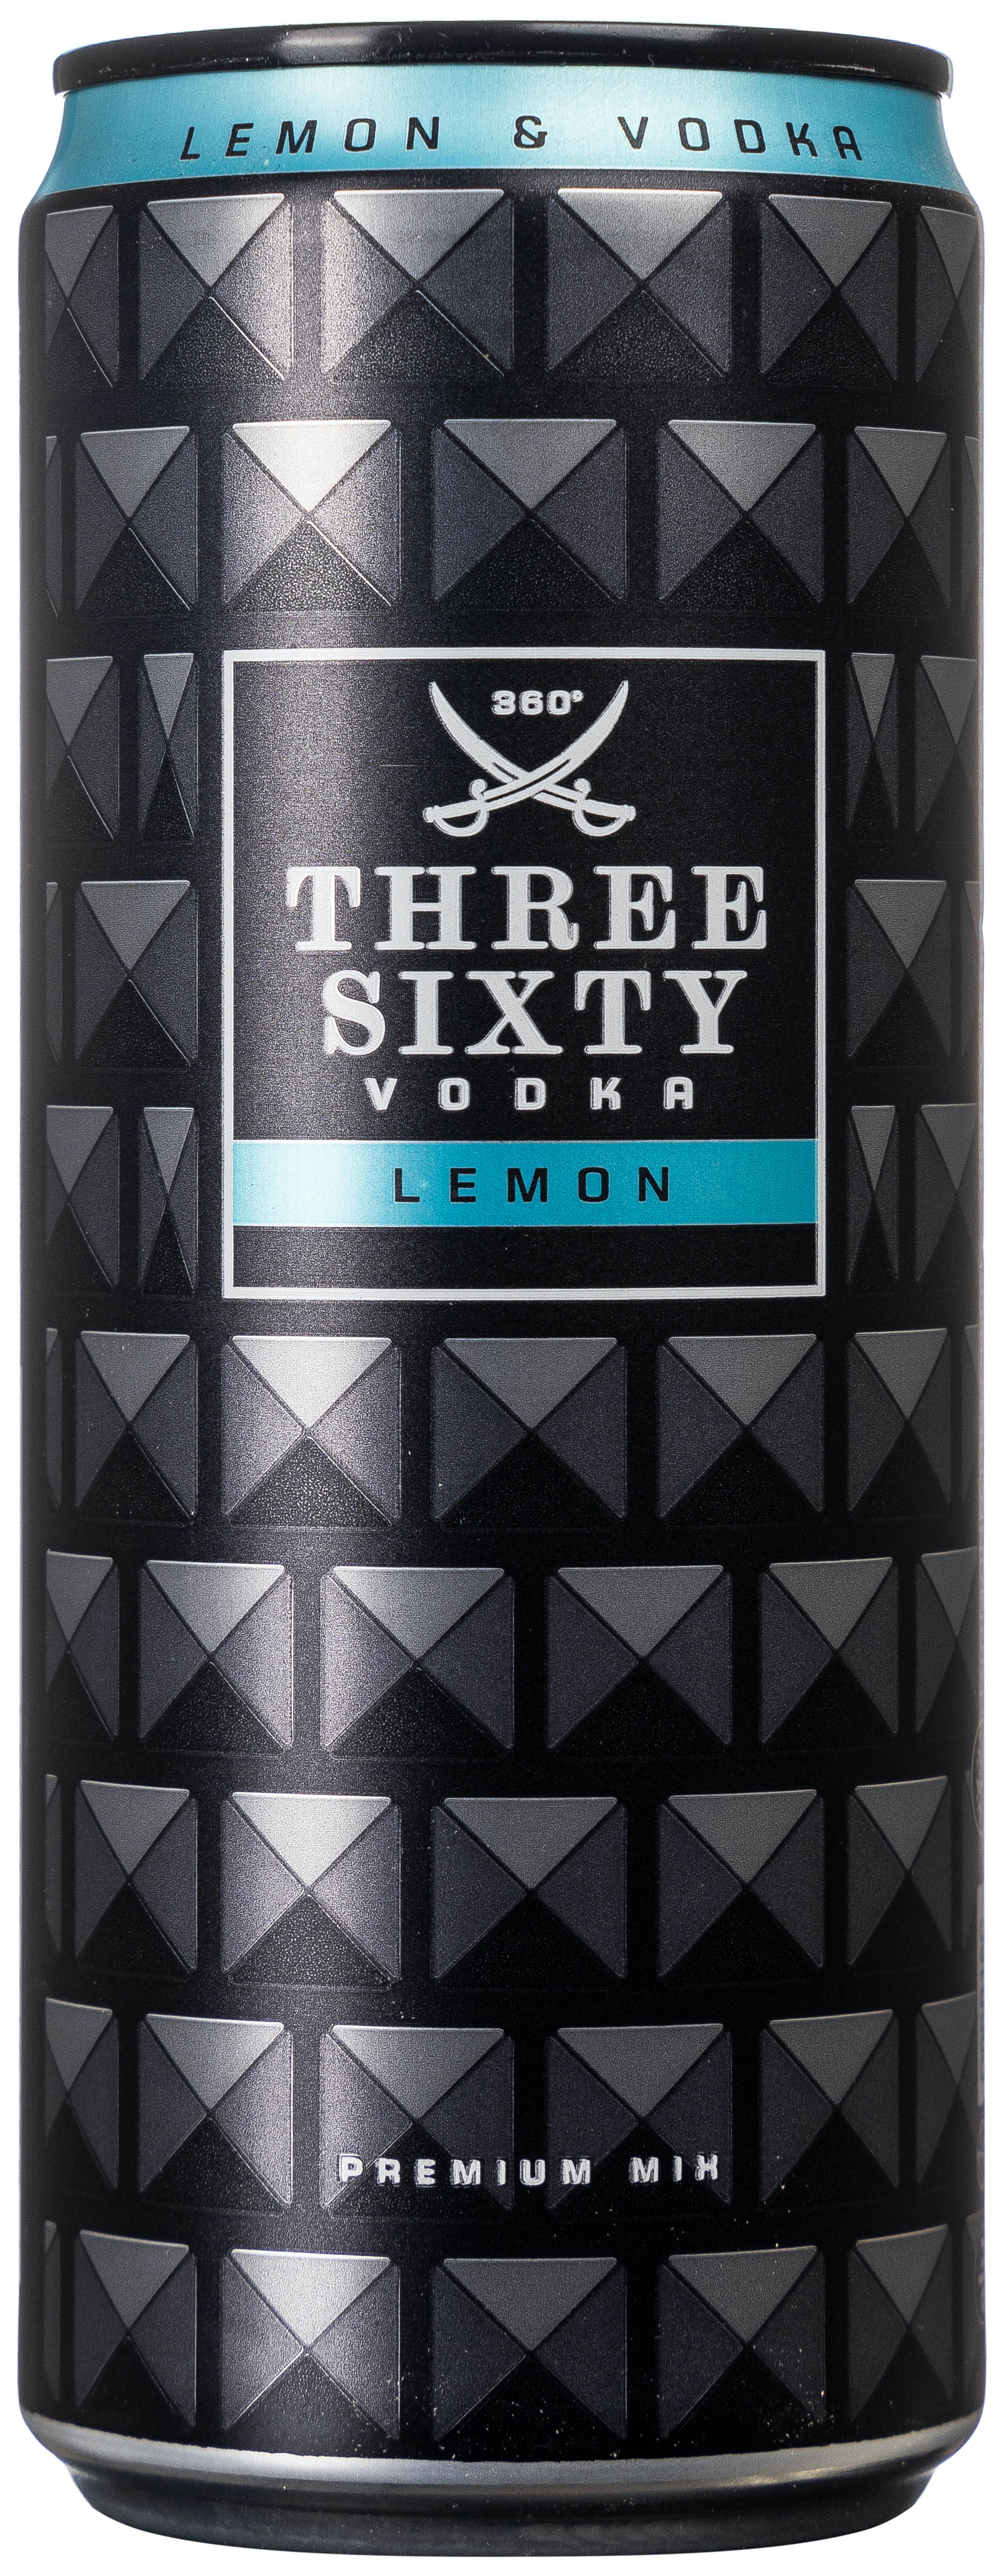 Three Sixty Vodka & Lemon 10% vol. 0,33L EINWEG 